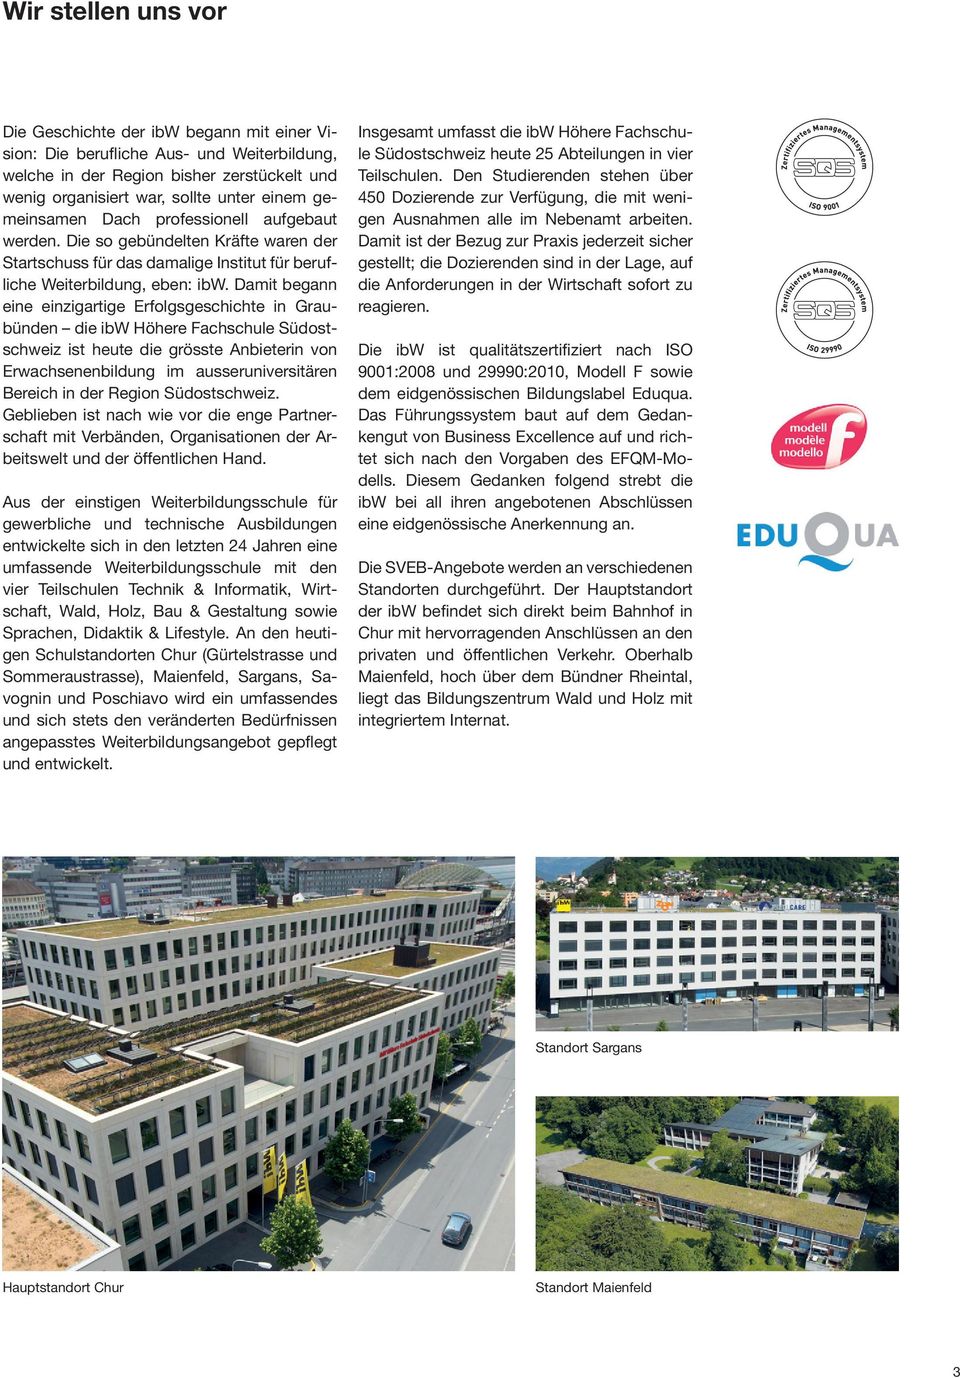 Damit begann eine einzigartige Erfolgsgeschichte in Graubünden die ibw Höhere Fachschule Südostschweiz ist heute die grösste Anbieterin von Erwachsenenbildung im ausseruniversitären Bereich in der